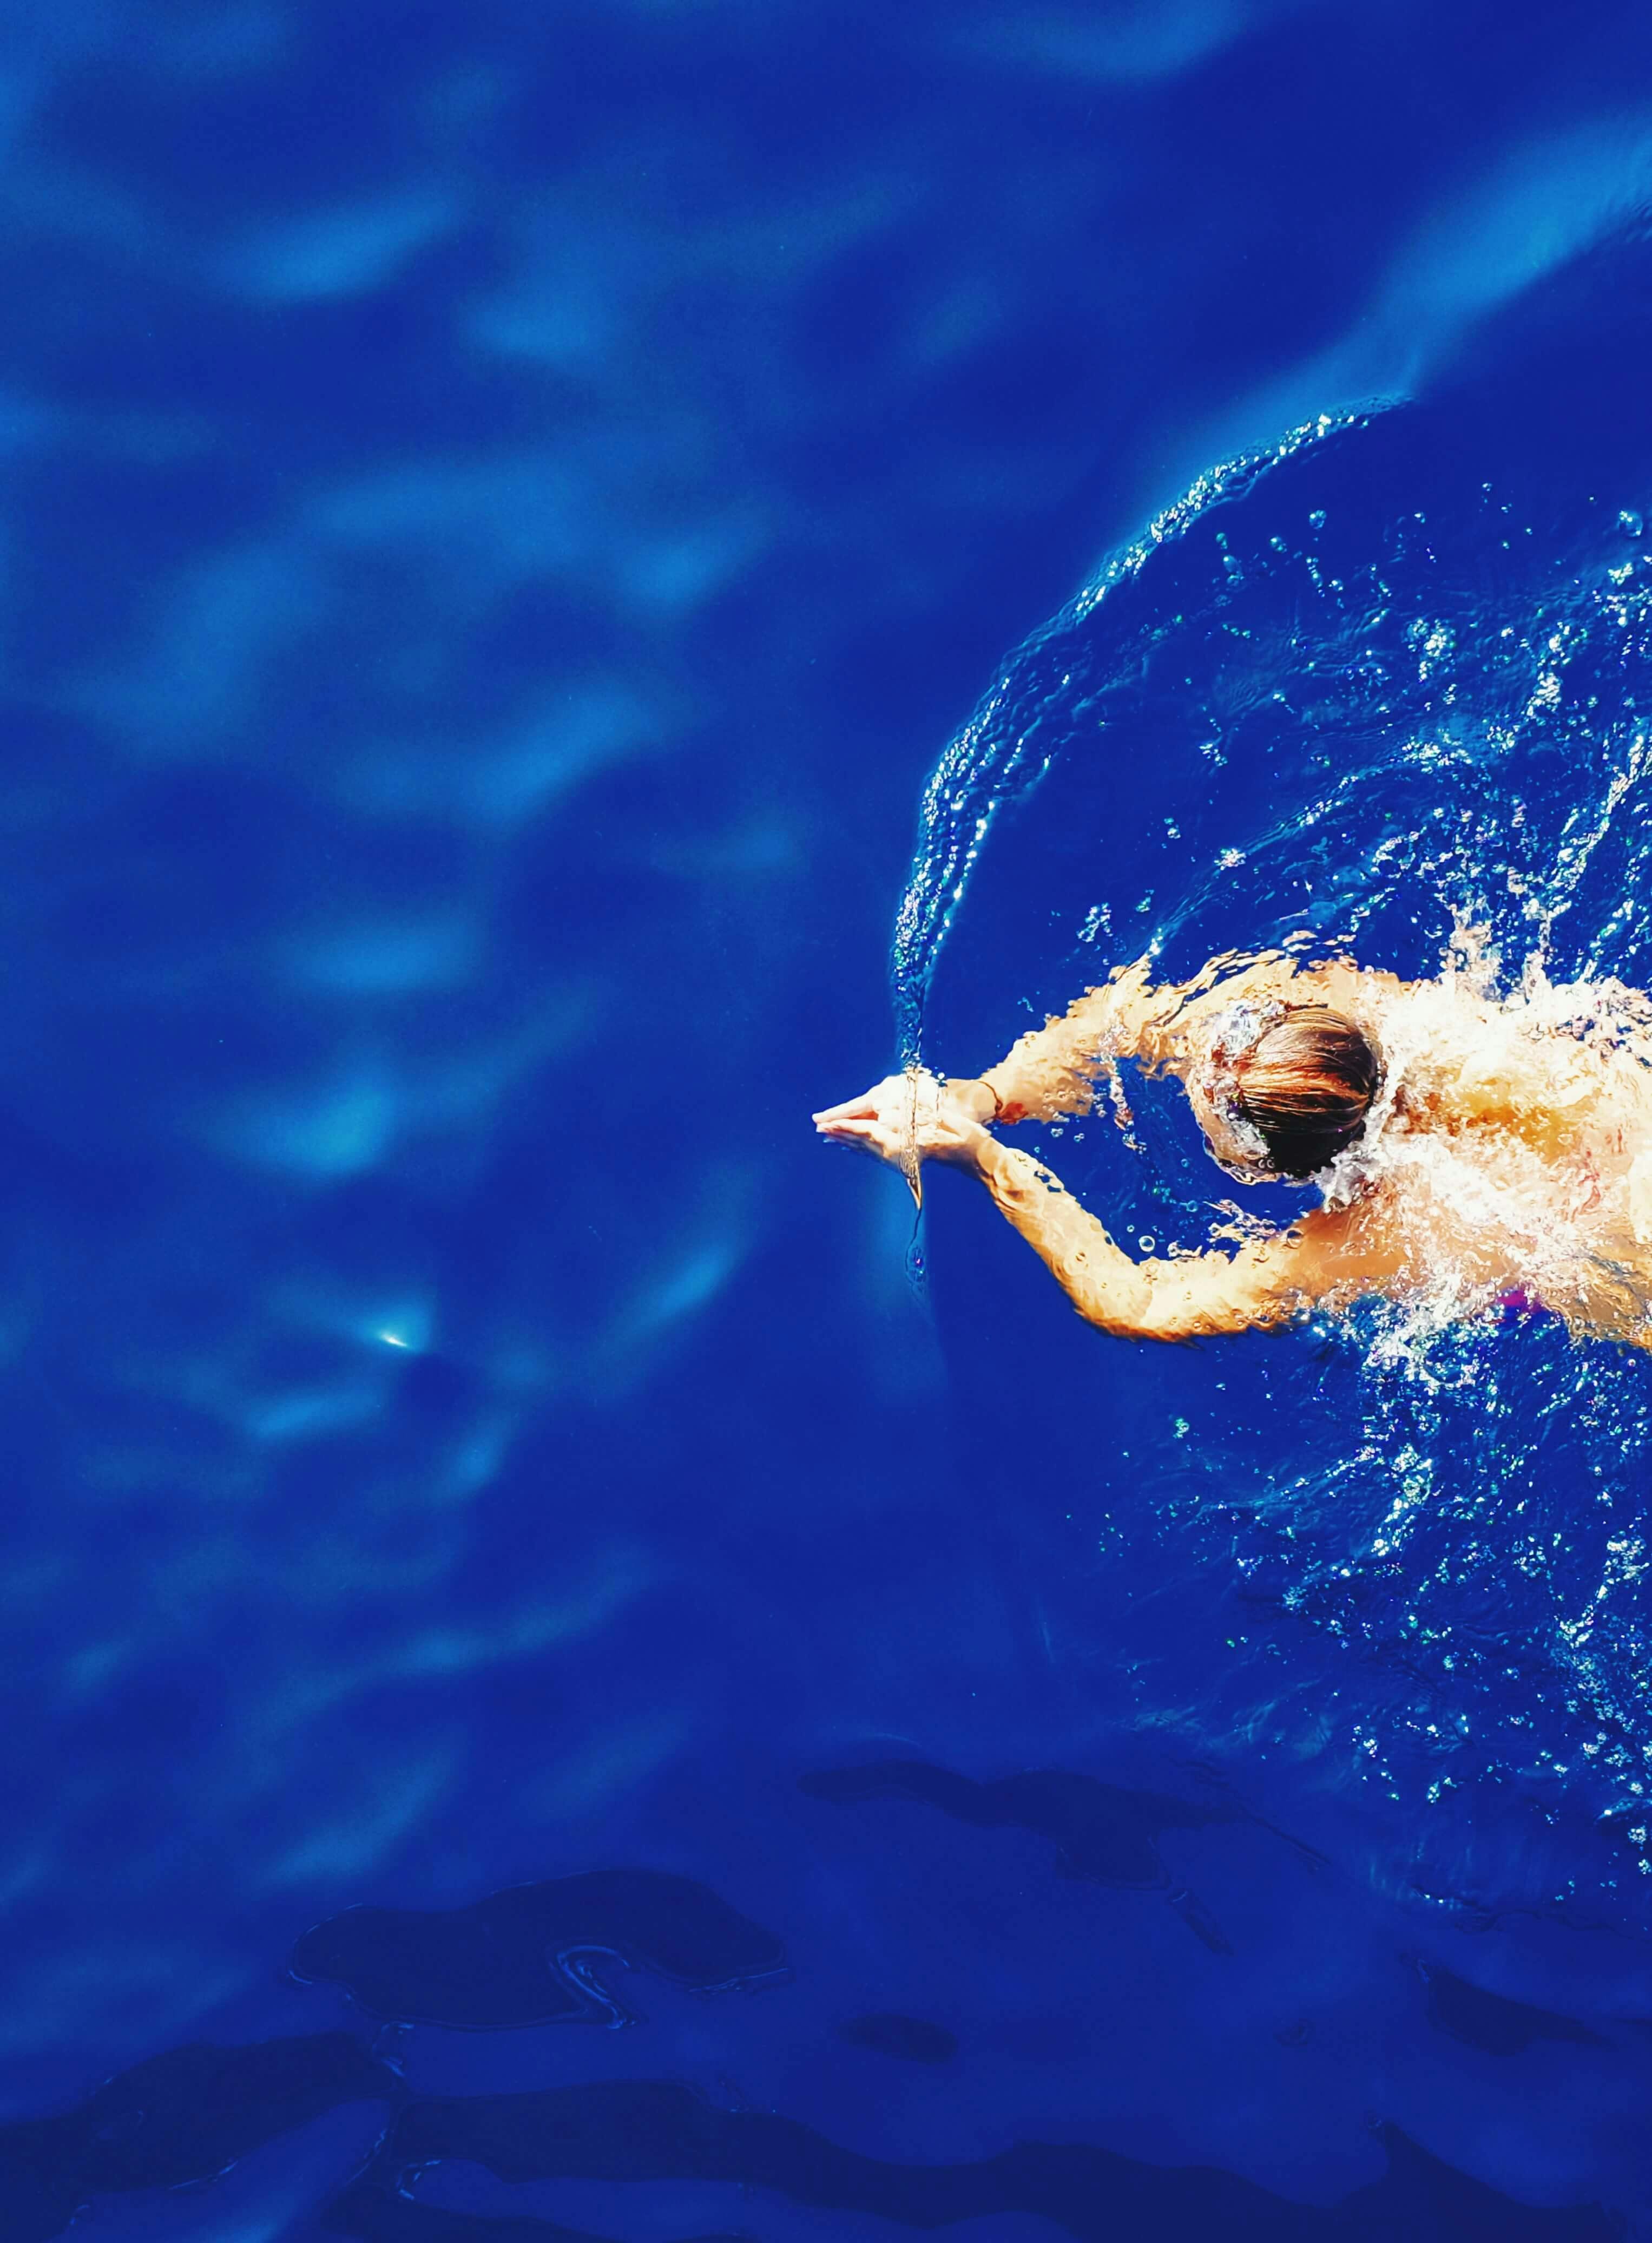 Imagem de um nadador em uma piscina